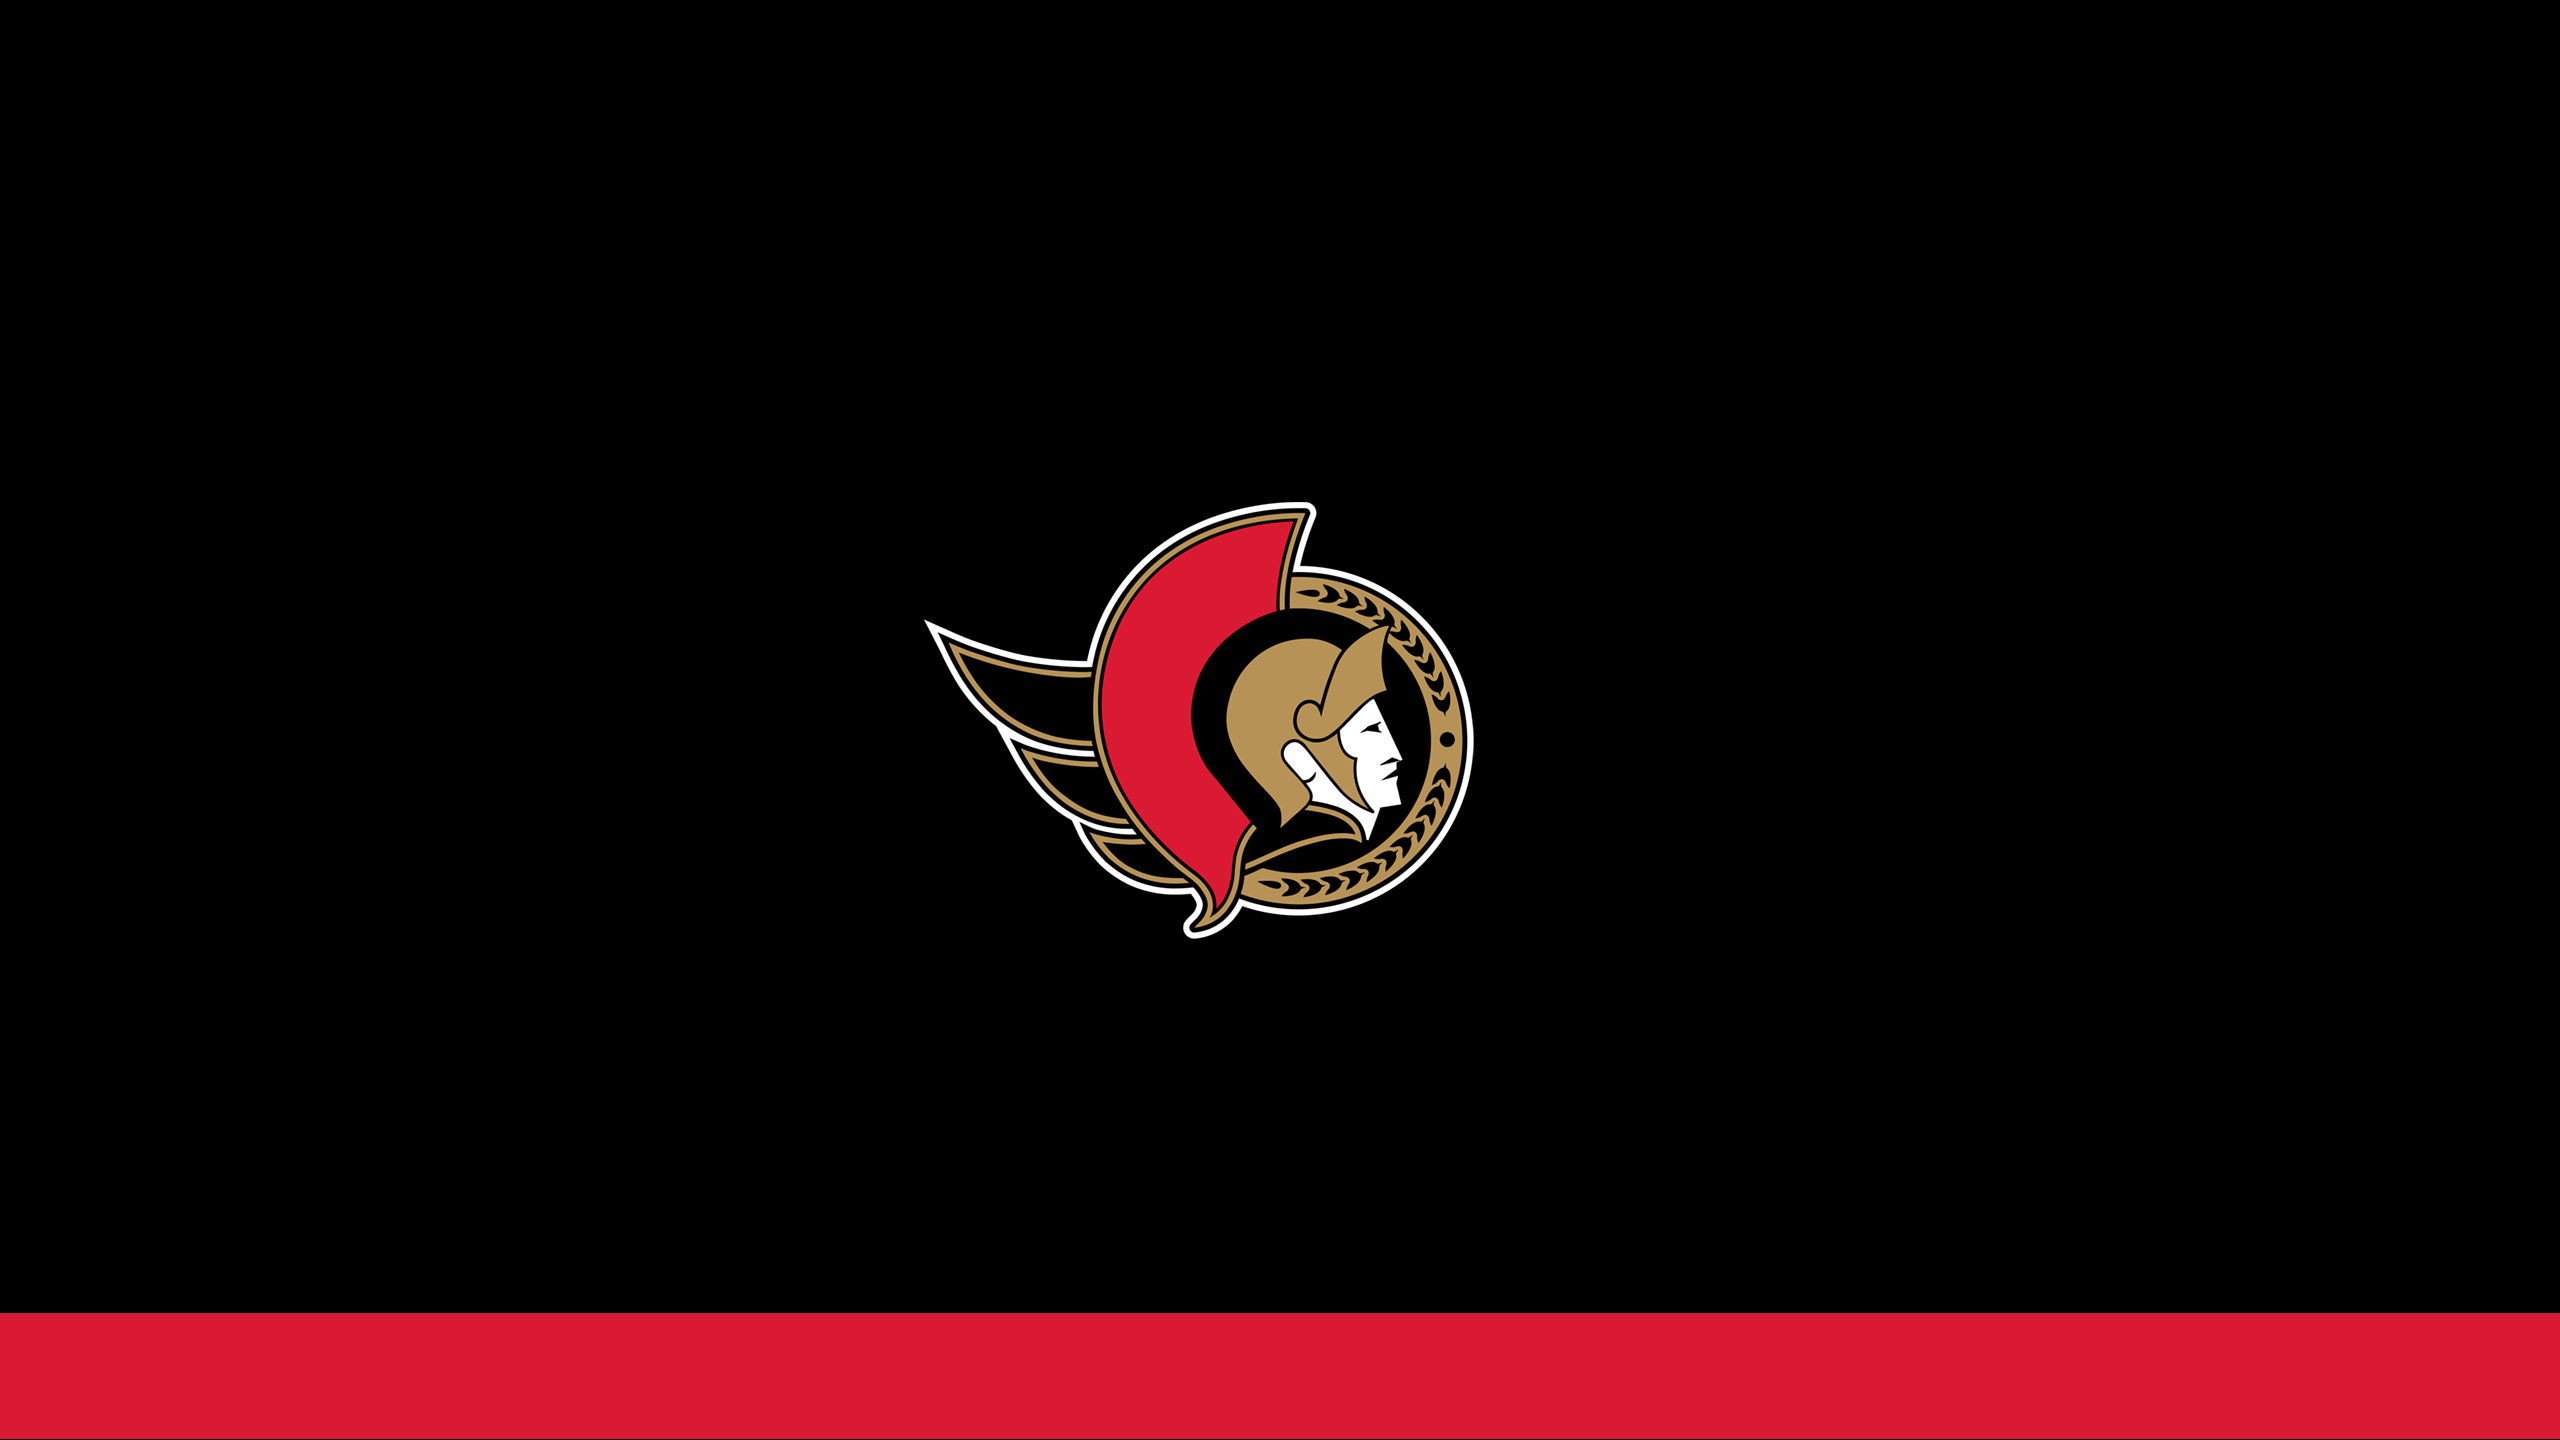 Ottawa Senators - NHL - Square Bettor